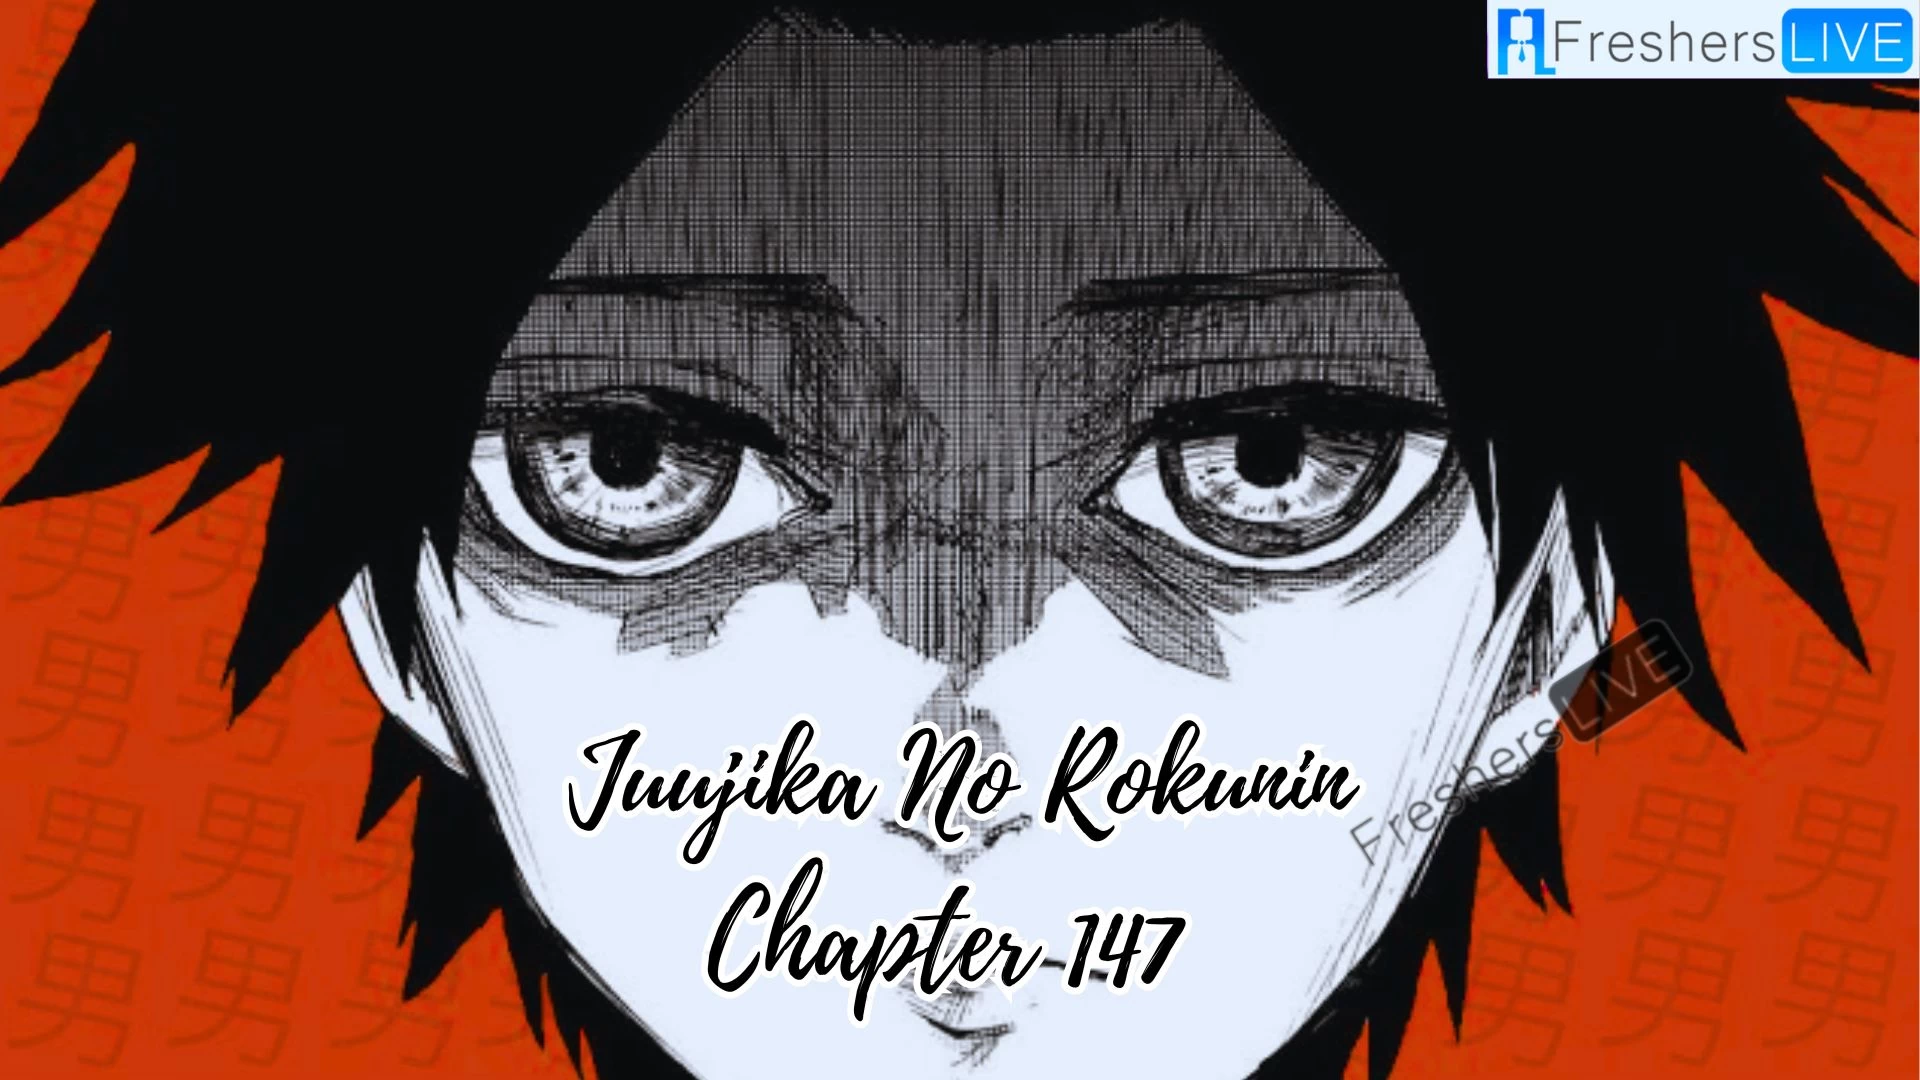 Juujika No Rokunin Capítulo 147 Spoiler, fecha de lanzamiento, escaneo sin procesar y más